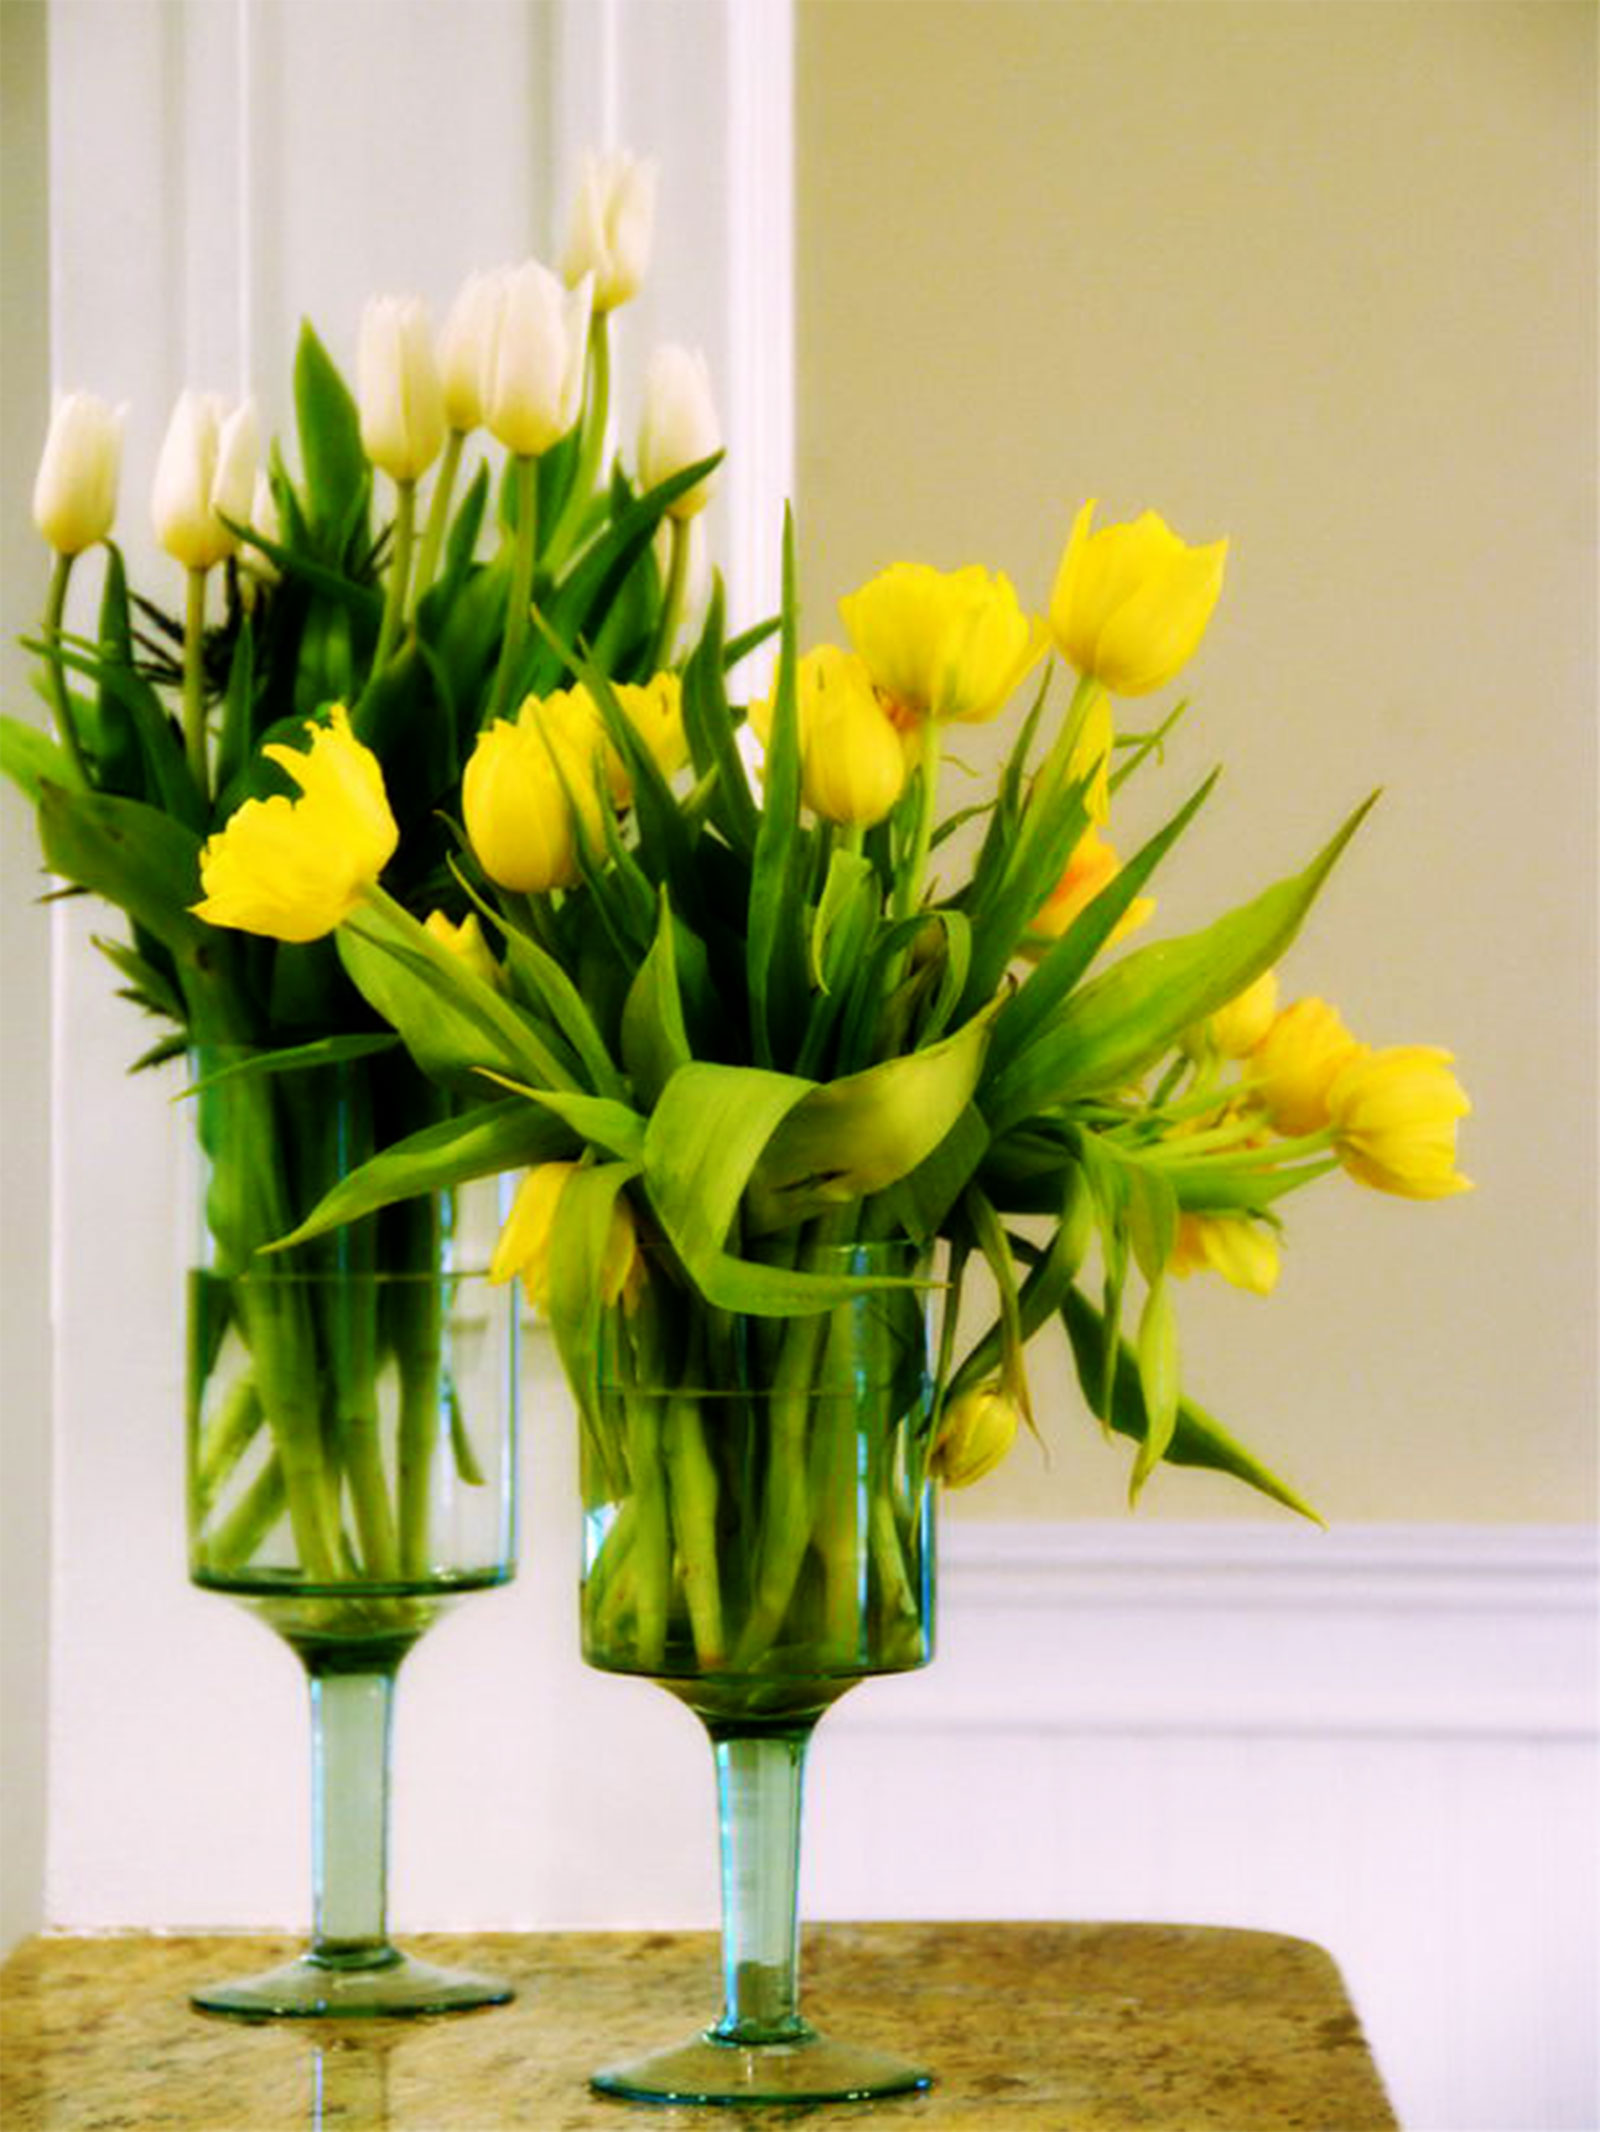 Как сохранить свежие тюльпаны в вазе